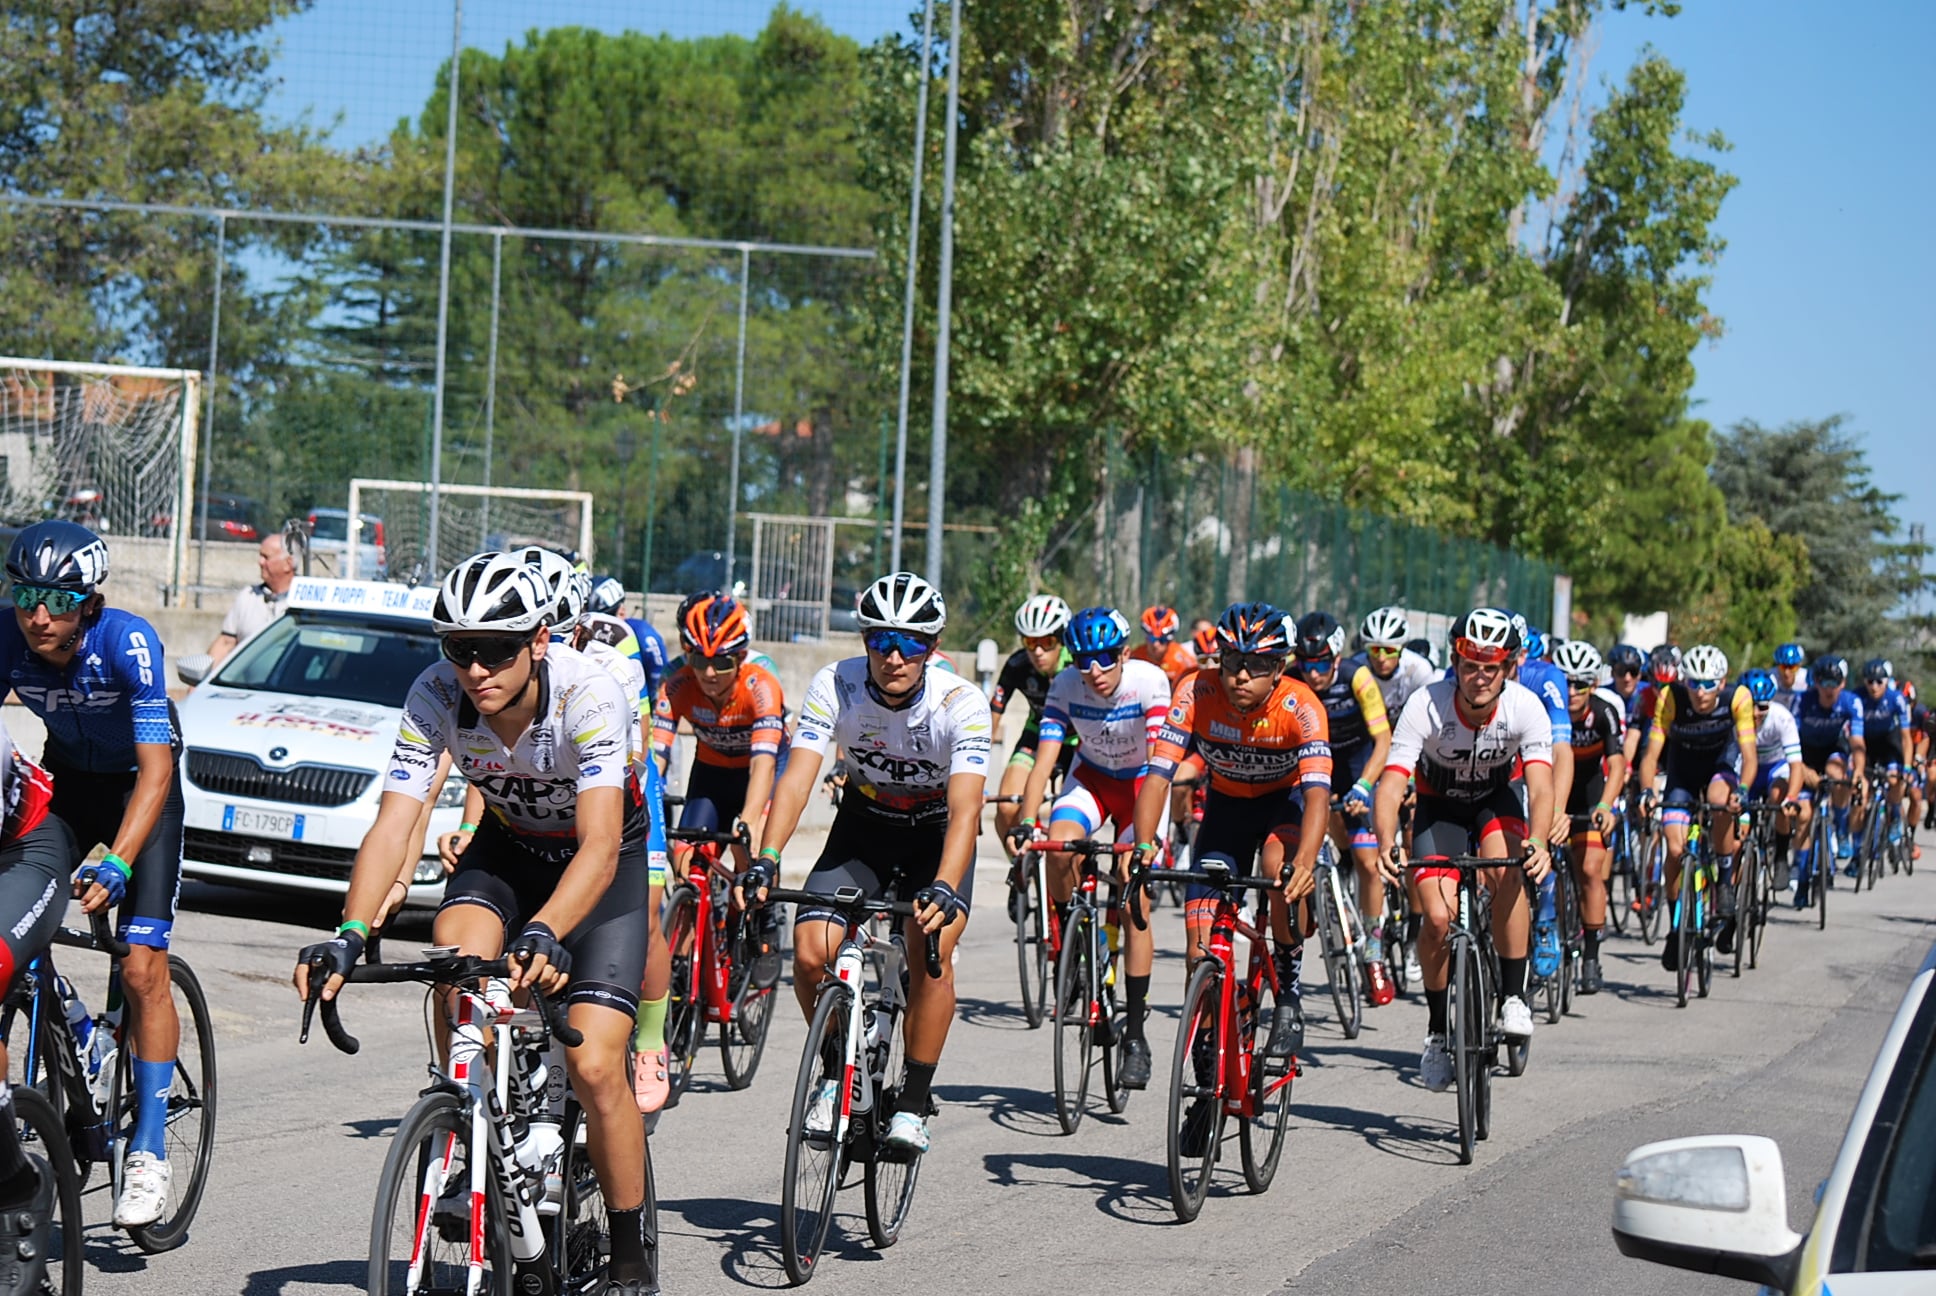 Ciclismo juniores, sulle strade di Casoli e dintorni il 27° Trofeo San Francesco